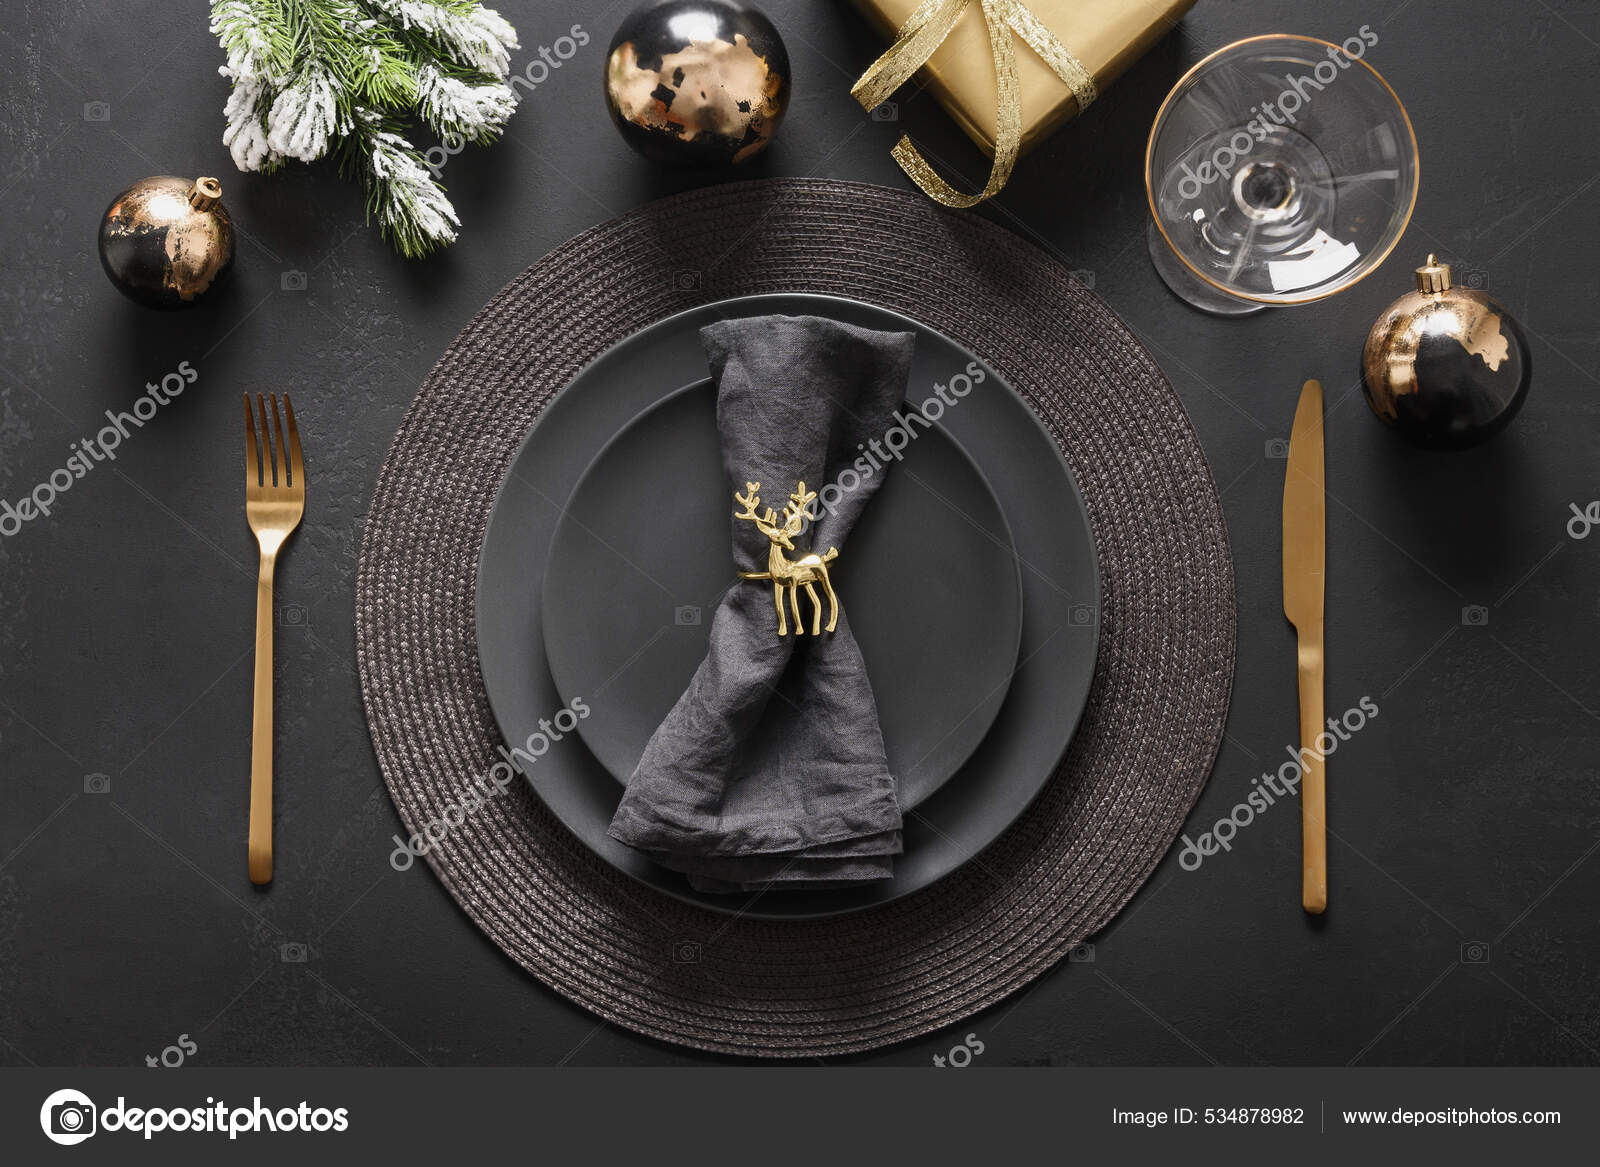 Ajuste de mesa de Navidad con platos negros oscuros, anillo de ciervo de  oro y cubiertos de oro. Decoraciones doradas doradas.: fotografía de stock  © Svetlana_Cherruty #534878982